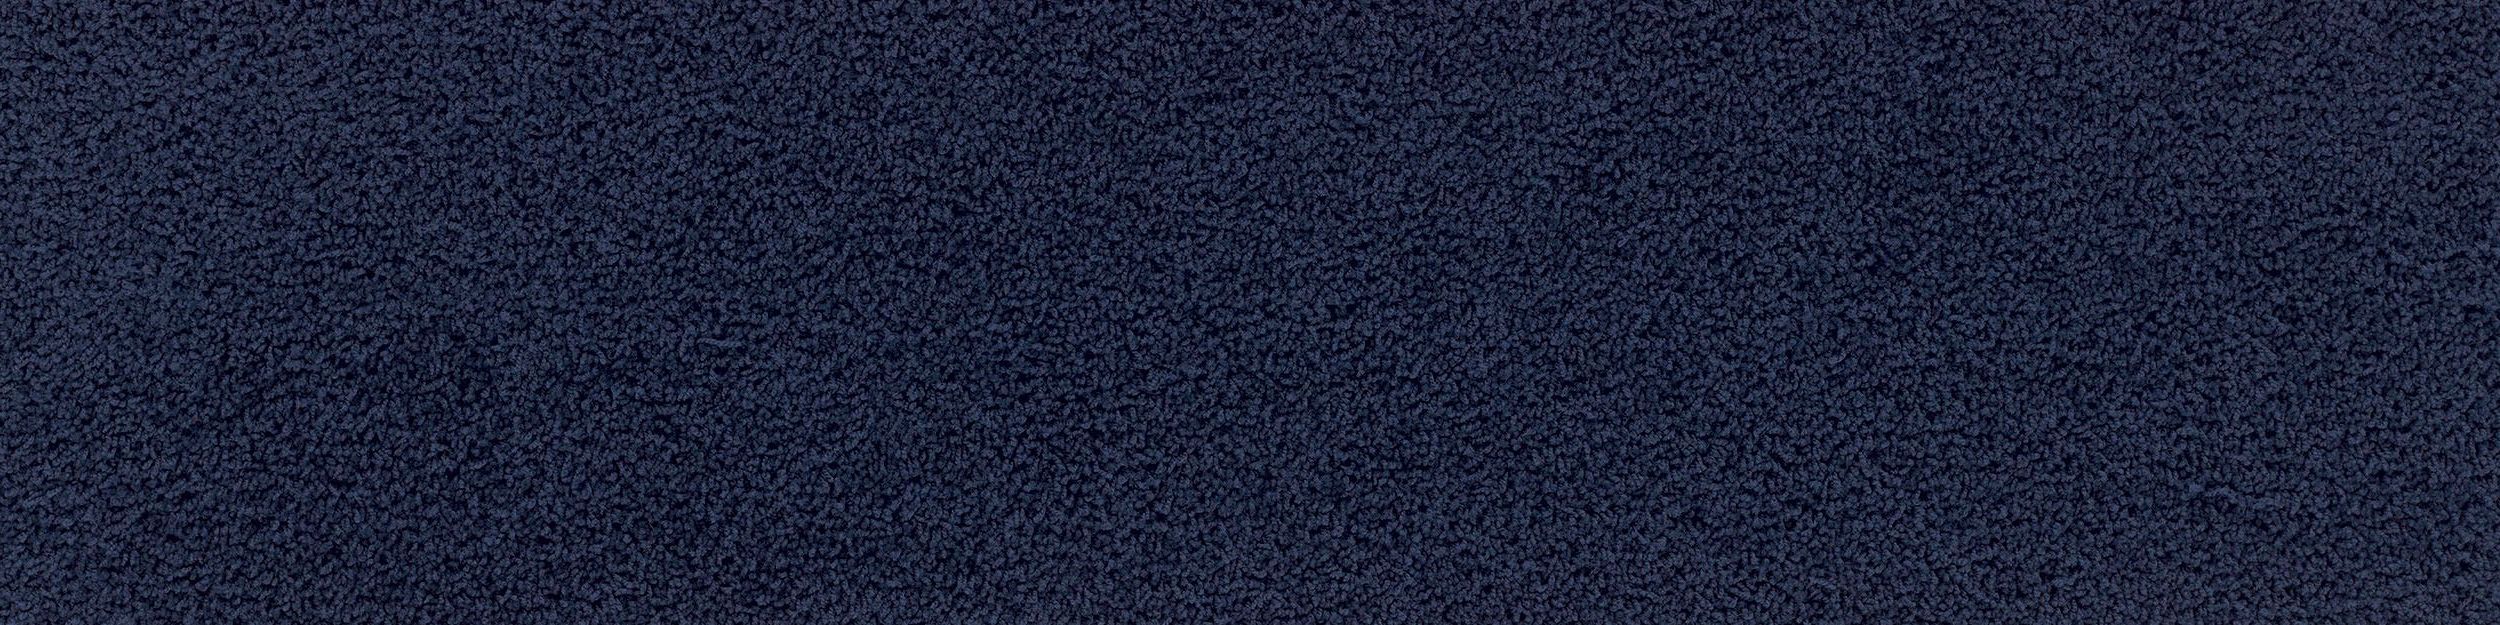 HN830 Carpet Tile In Cobalt Bildnummer 2